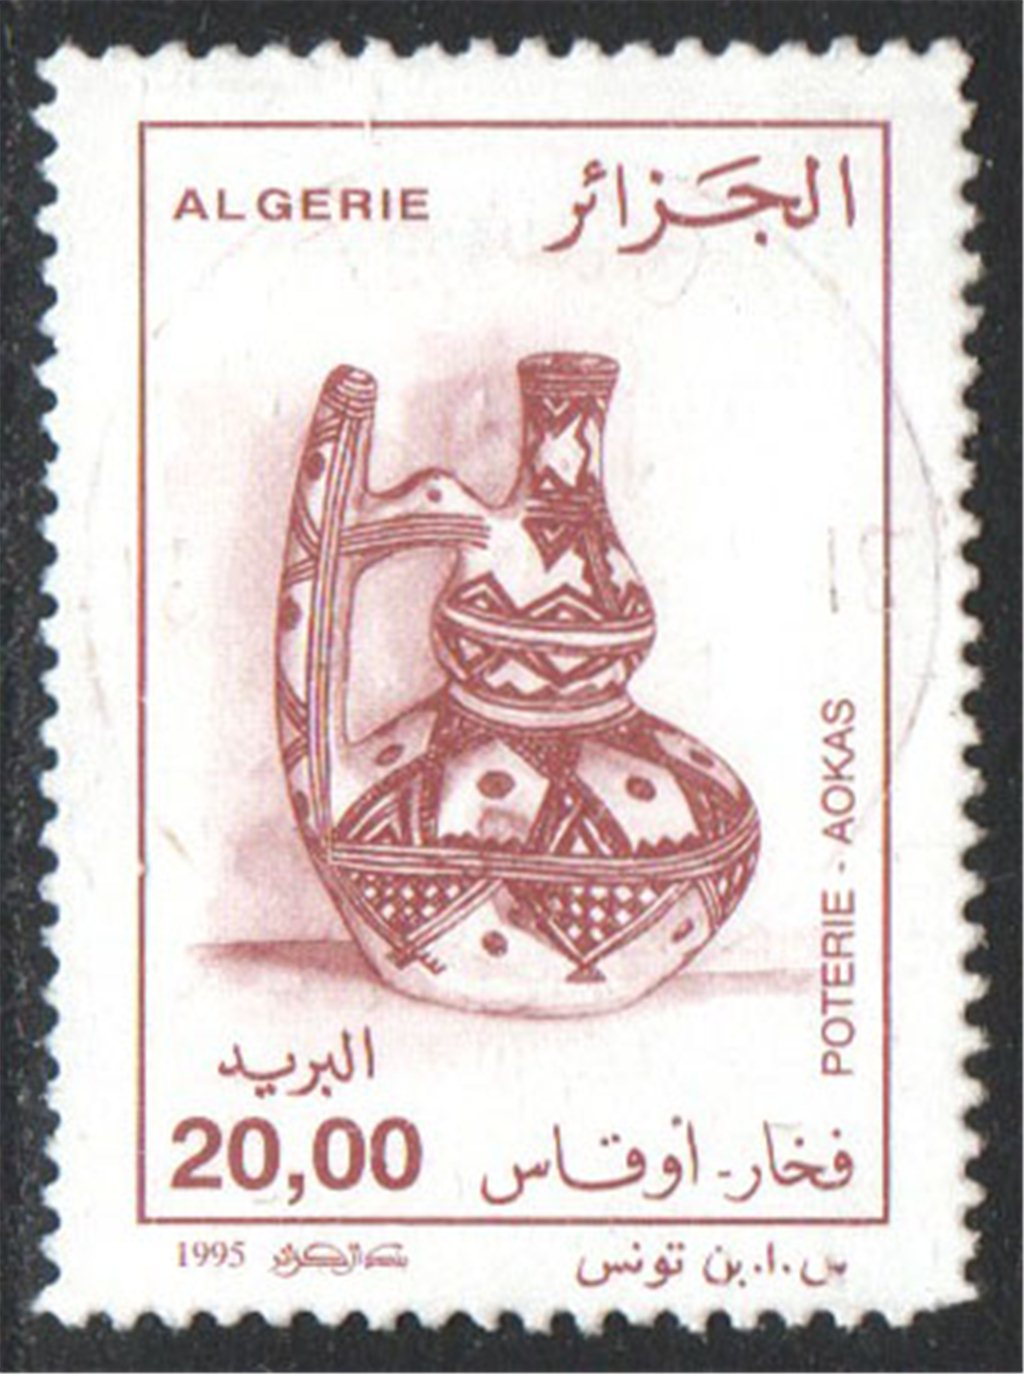 Algeria Scott 1056 Used - Click Image to Close